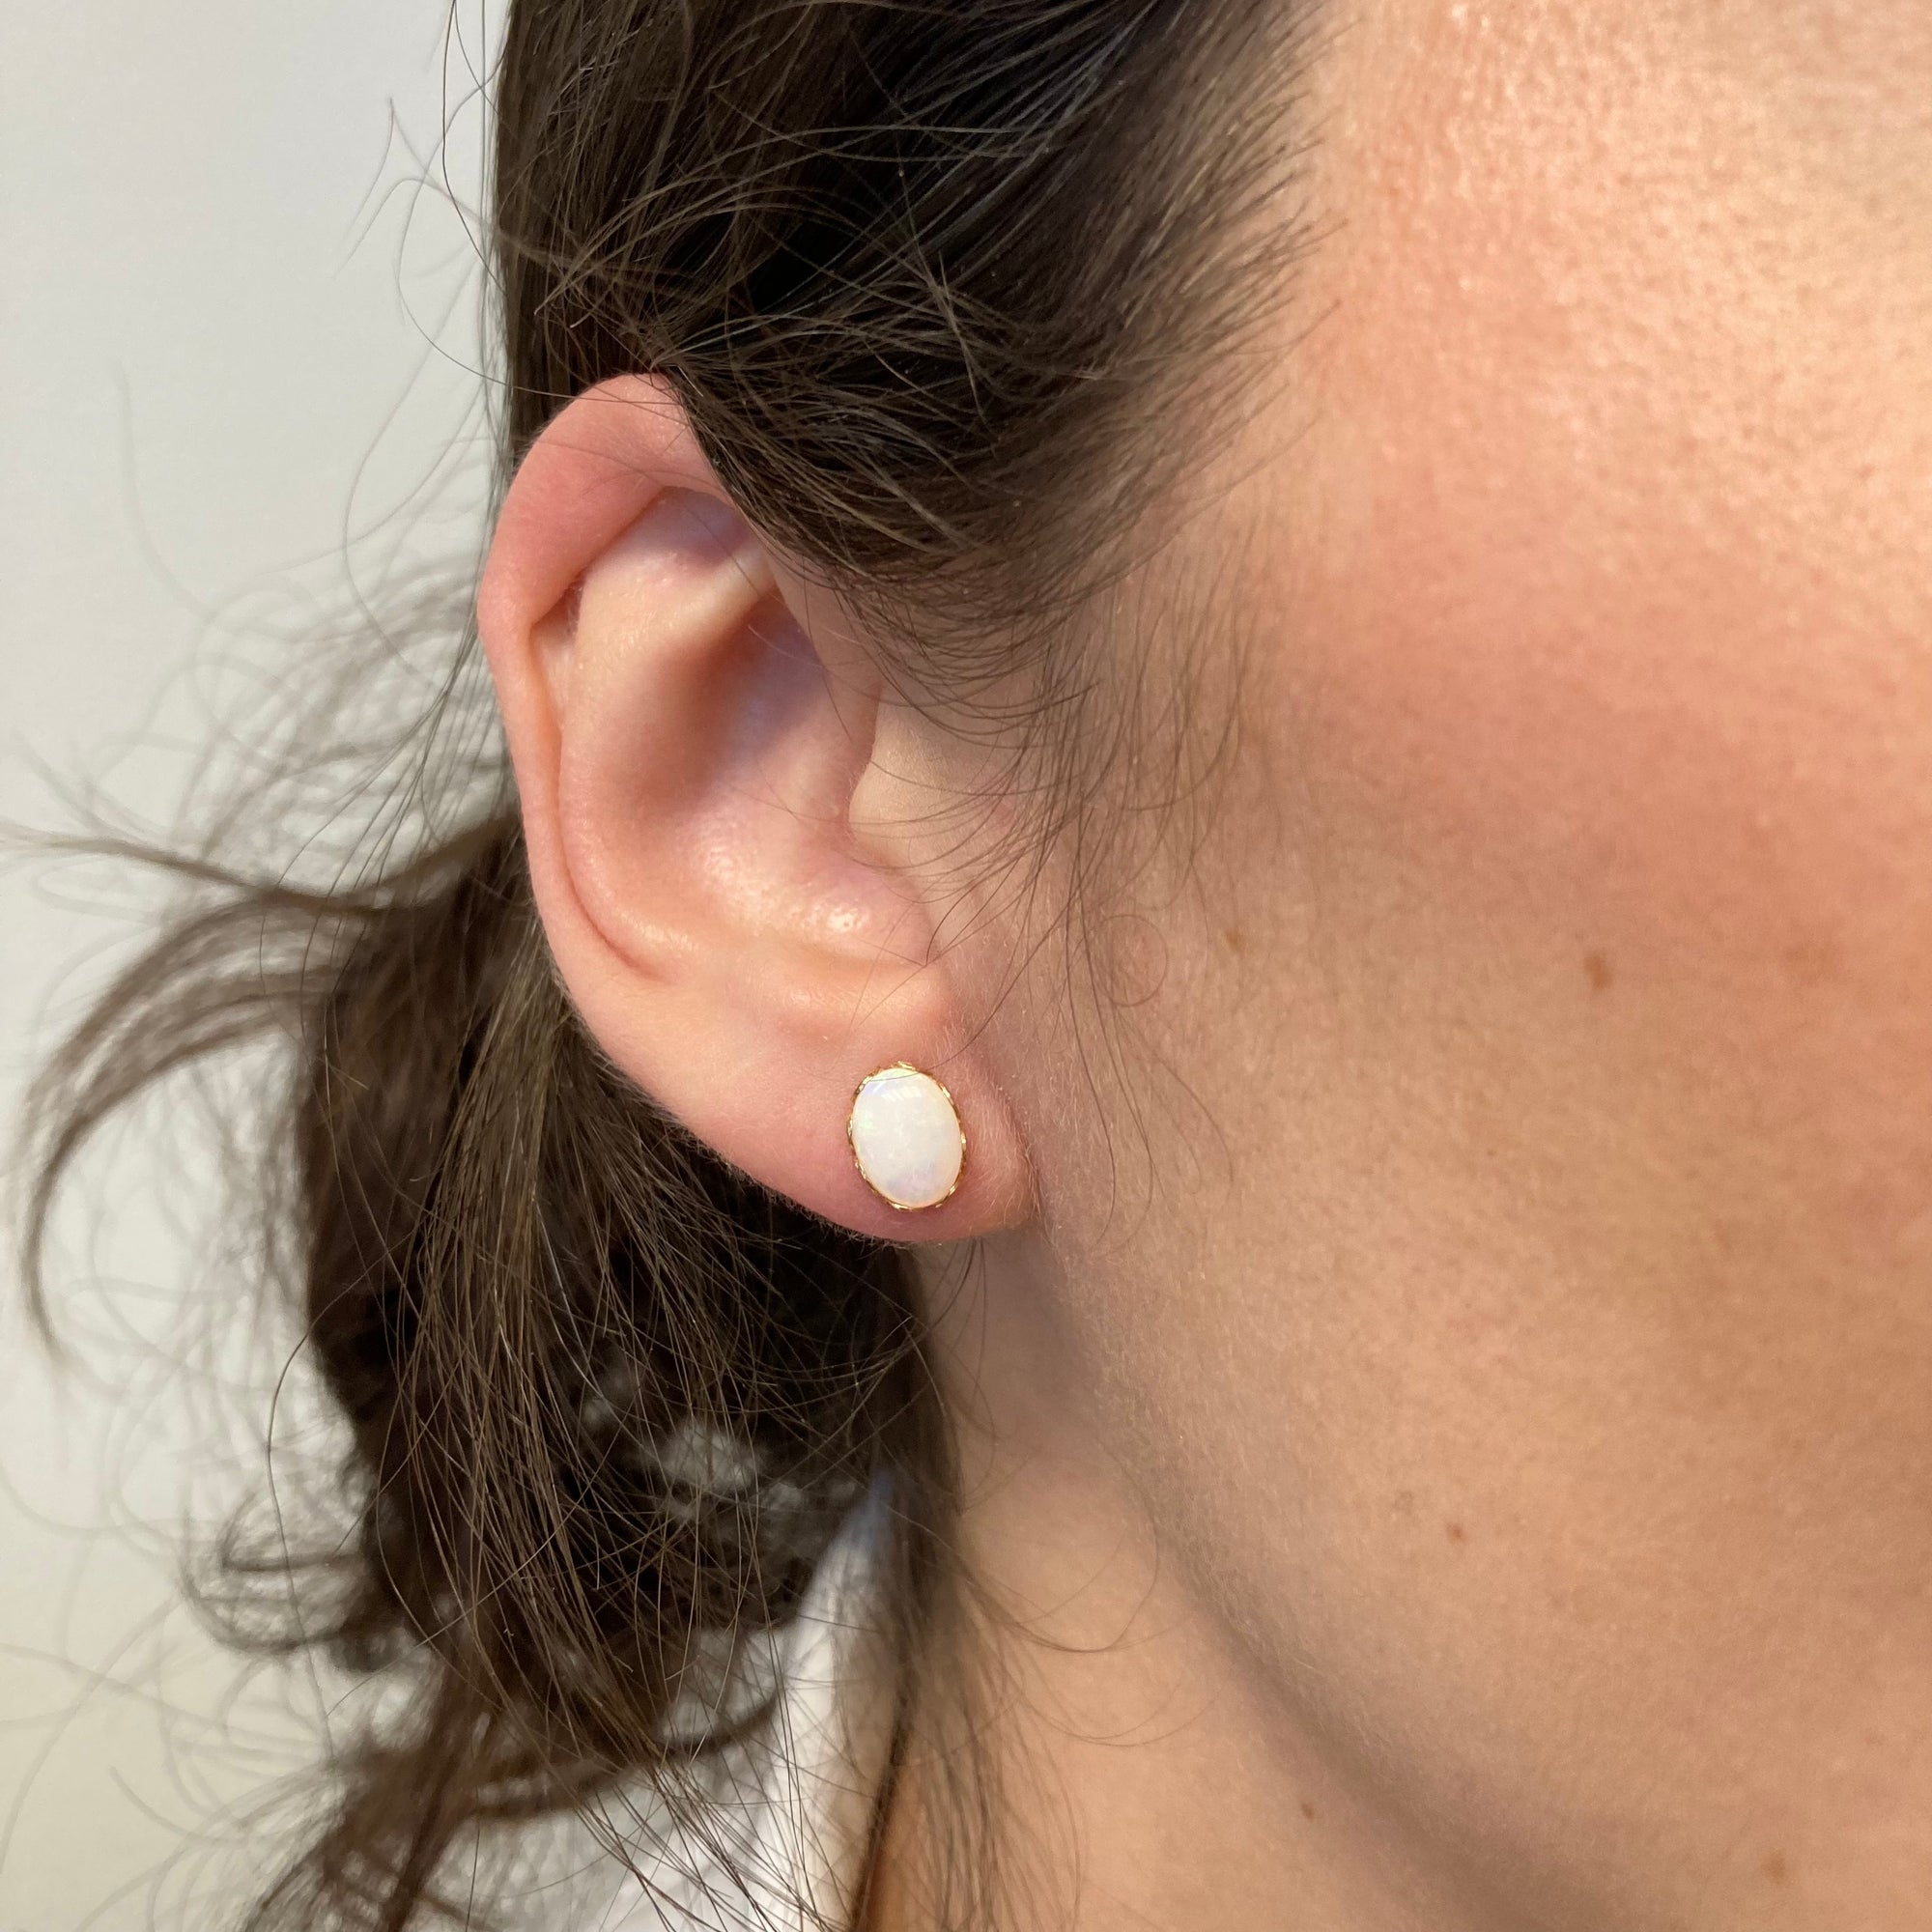 Opal Stud Earrings | 1.40ctw |